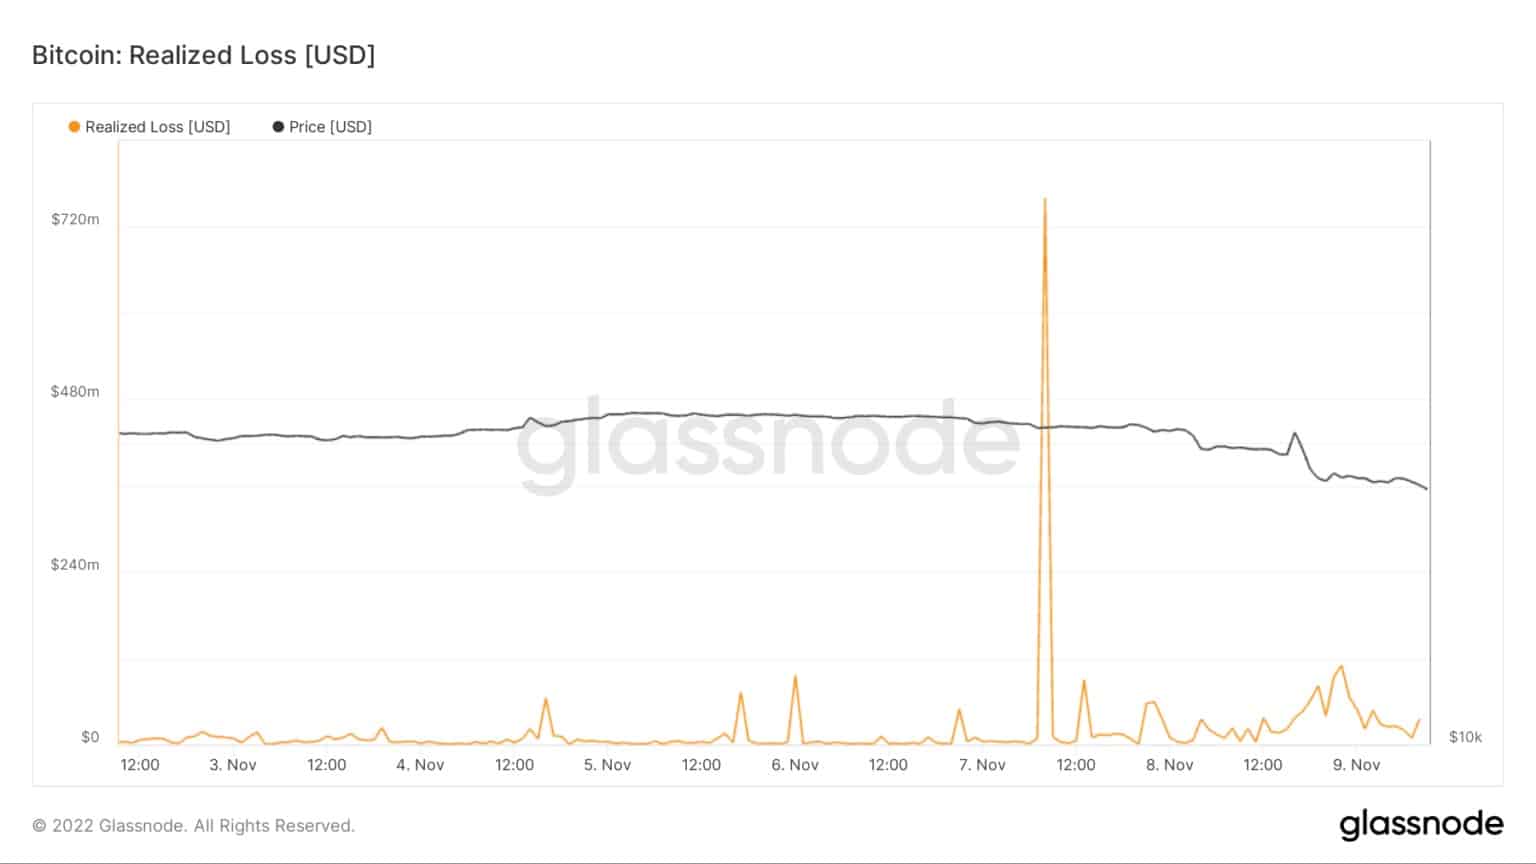 Grafik, die den realisierten Verlust für Bitcoin vom 3. November bis 9. November zeigt (Quelle: Glassnode)